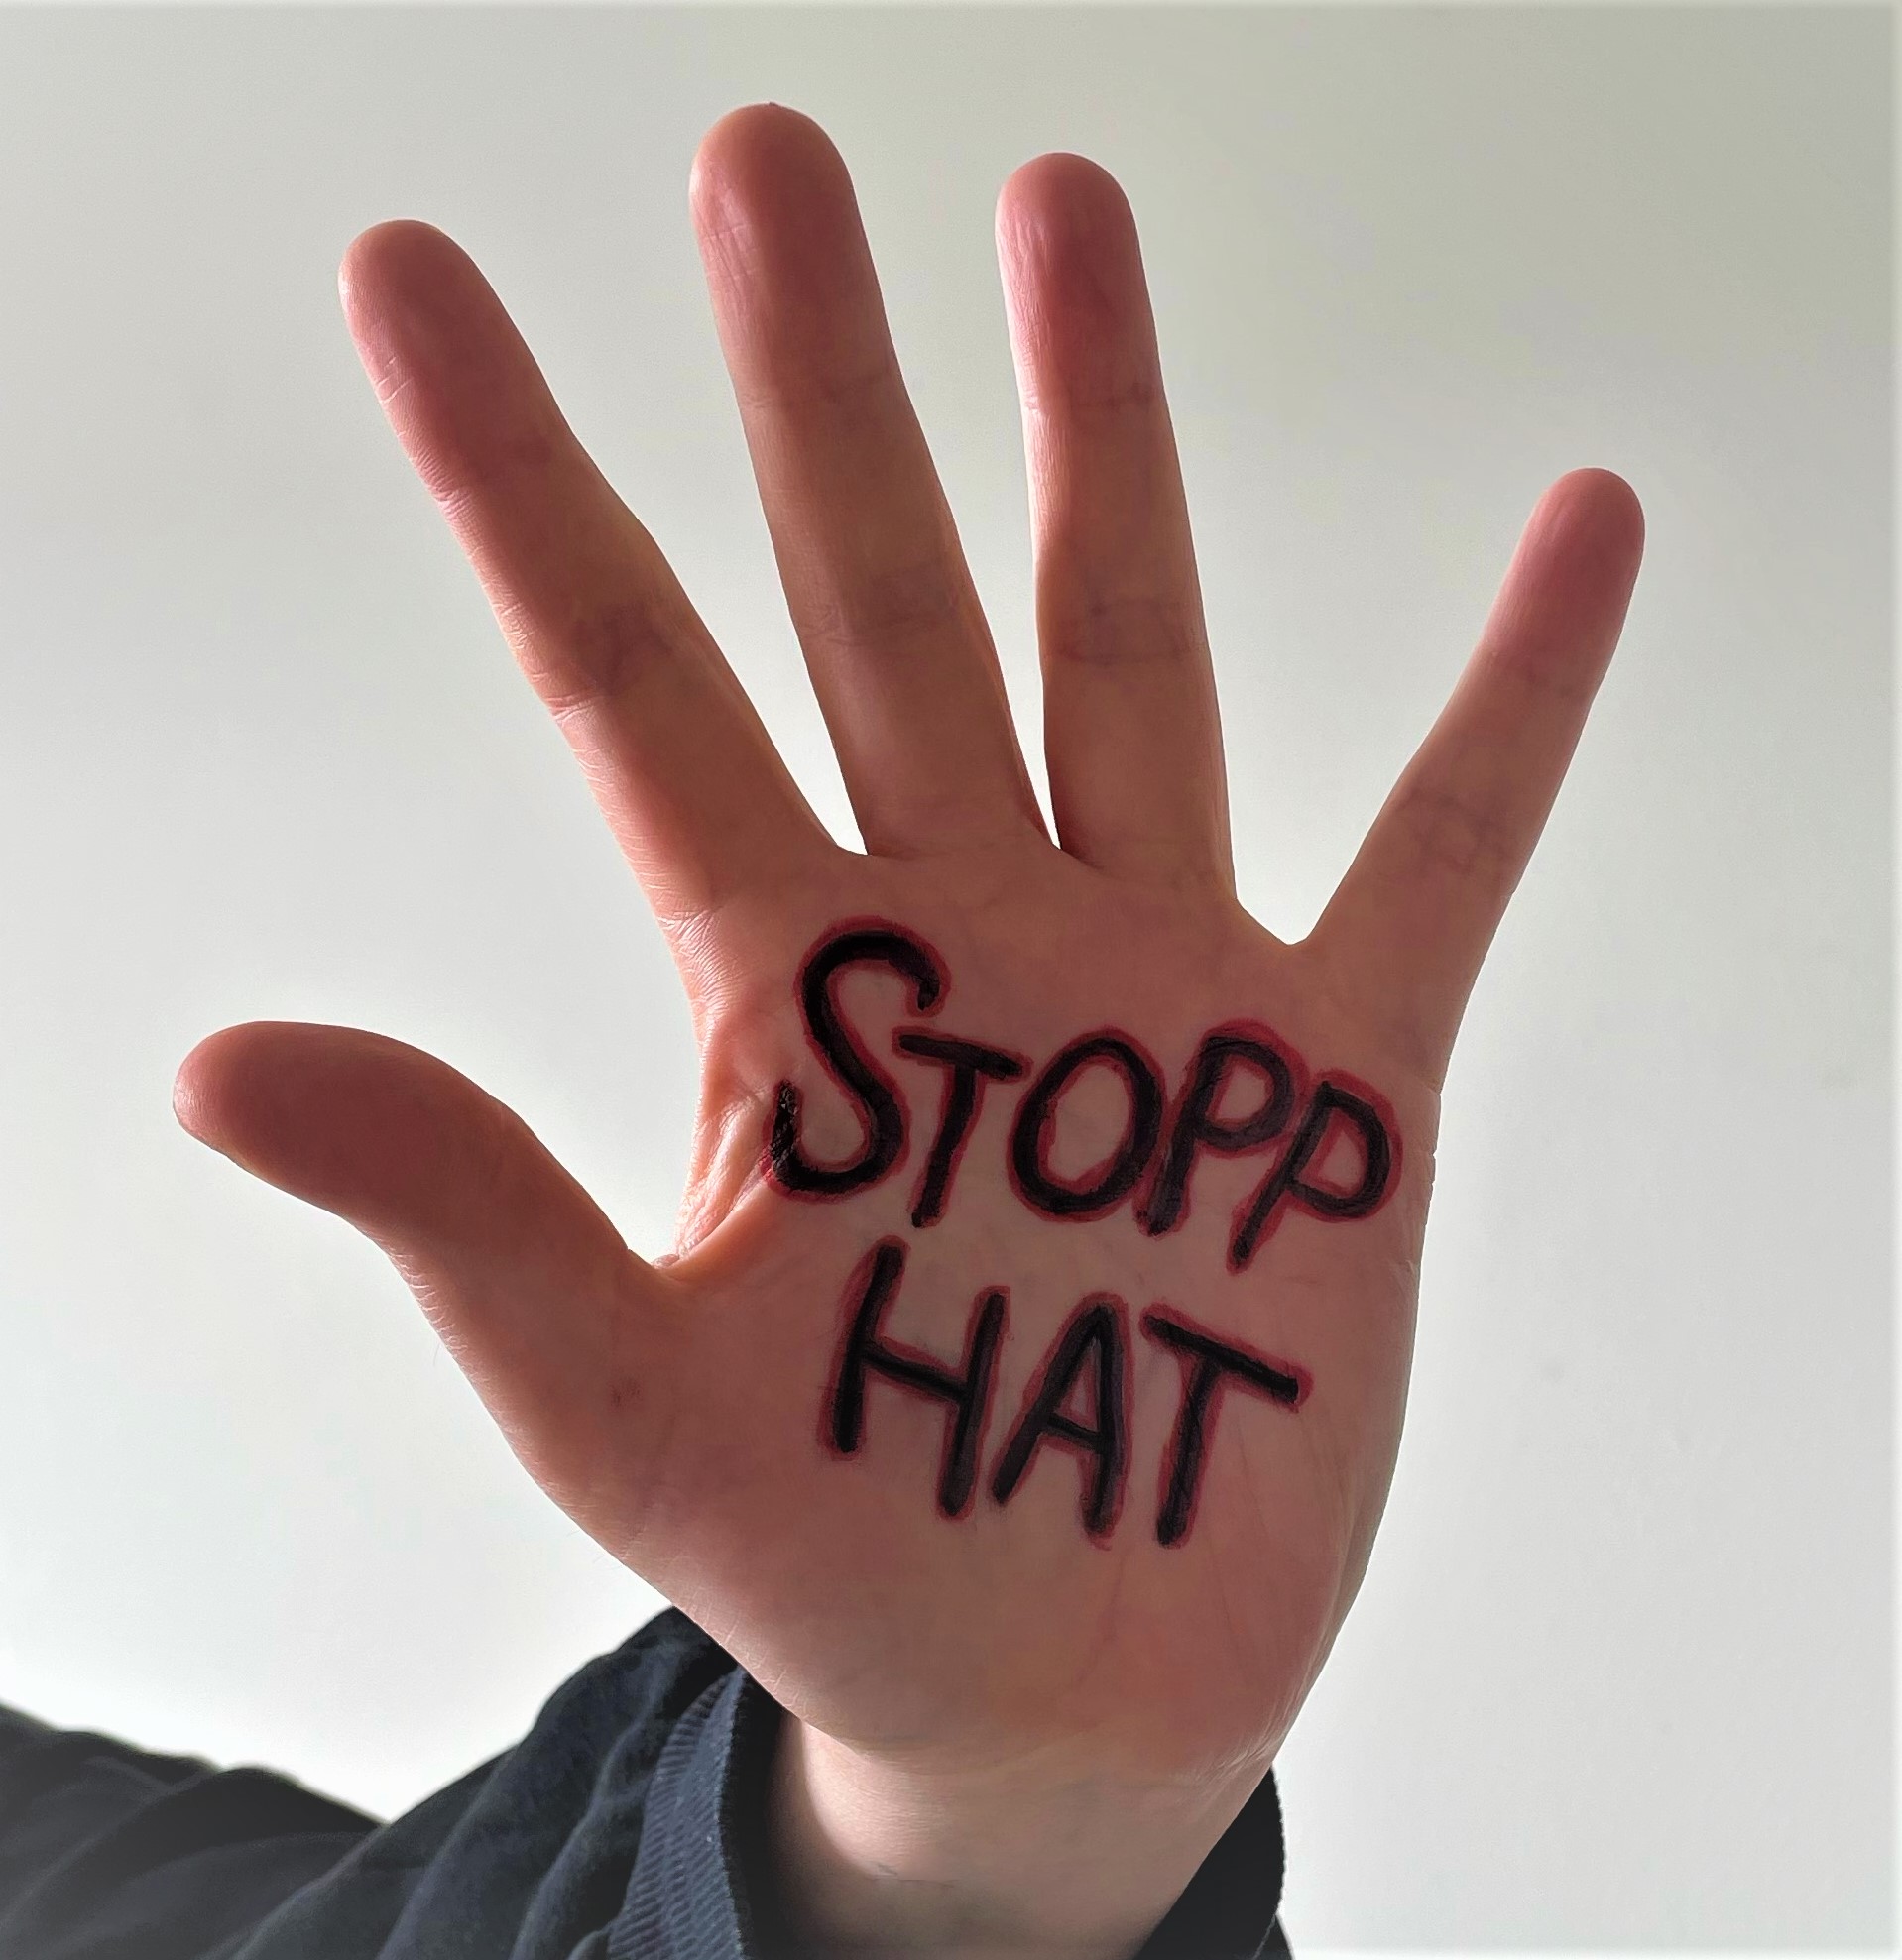 Lyshudet hånd opp mot hvit bakgrunn med ordene "stopp hat" skrevet i håndflata med svart og rød tusj.